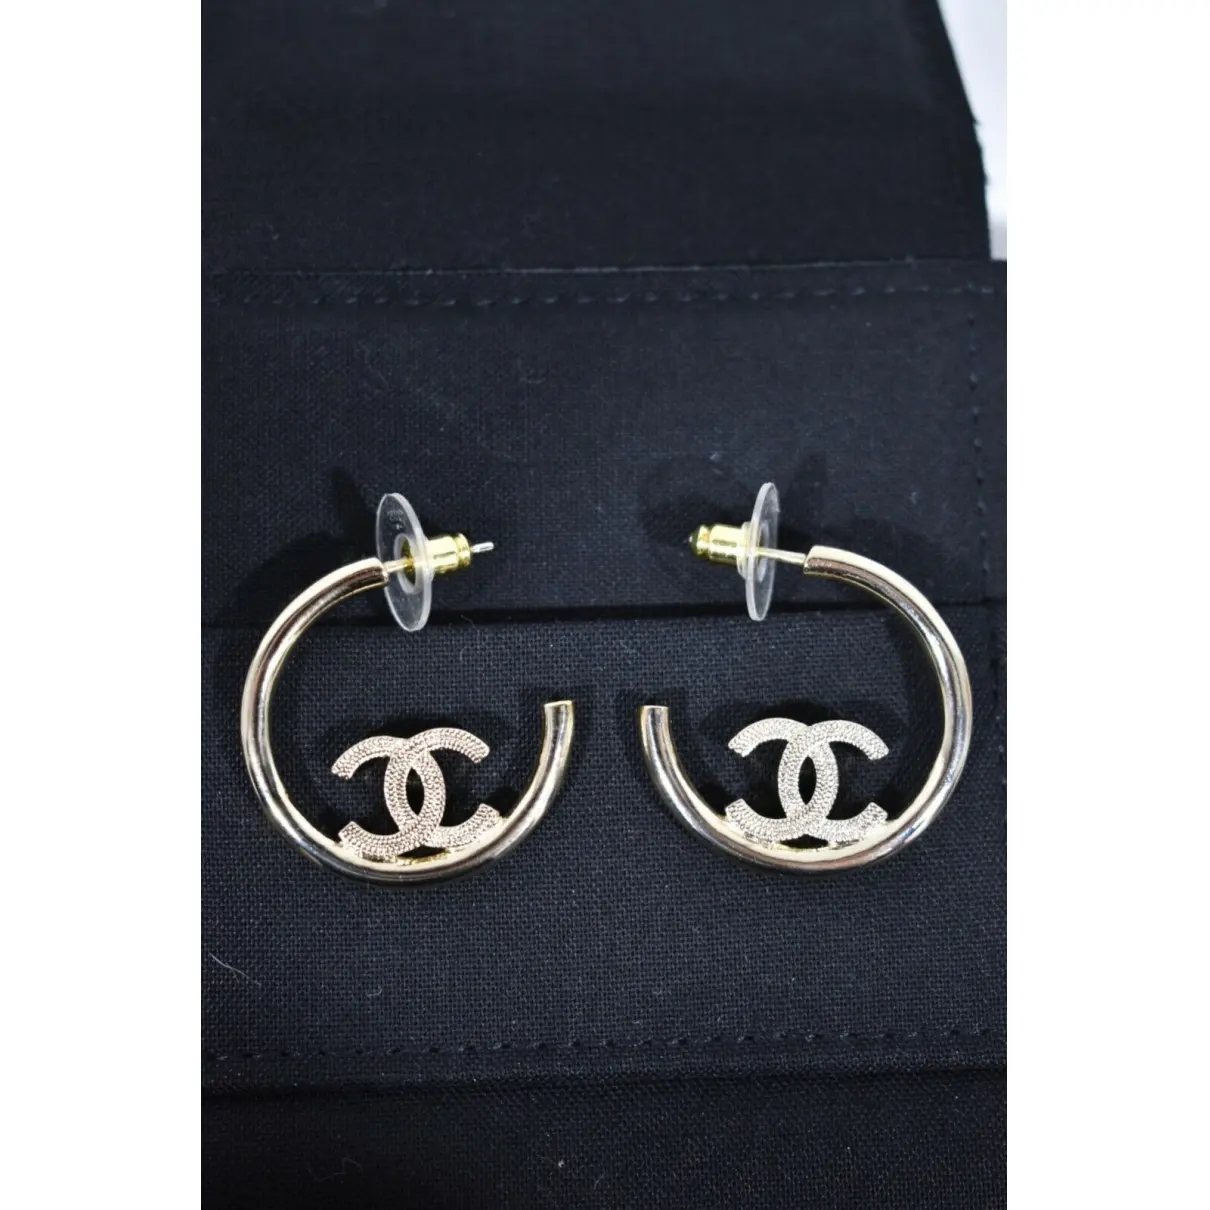 Buy Chanel Earrings online